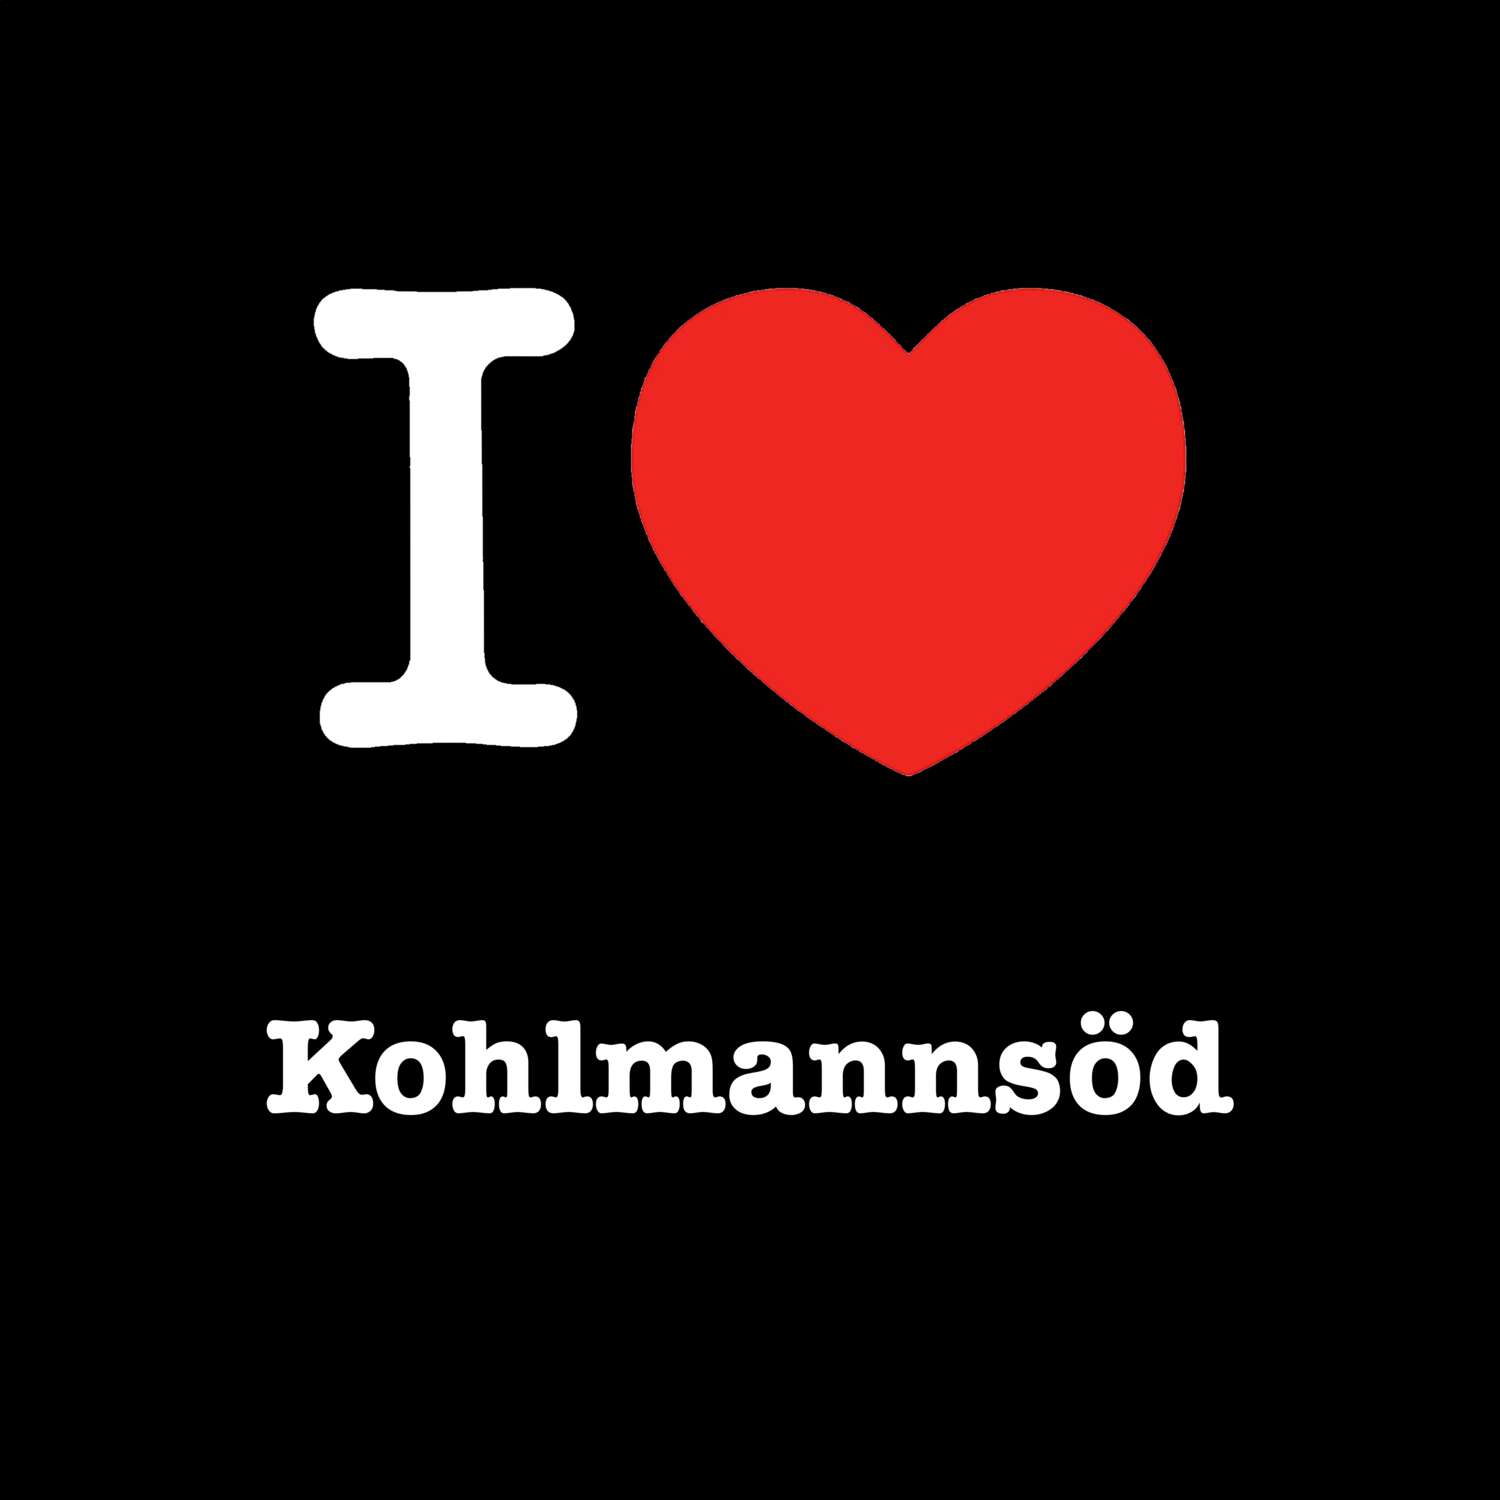 Kohlmannsöd T-Shirt »I love«